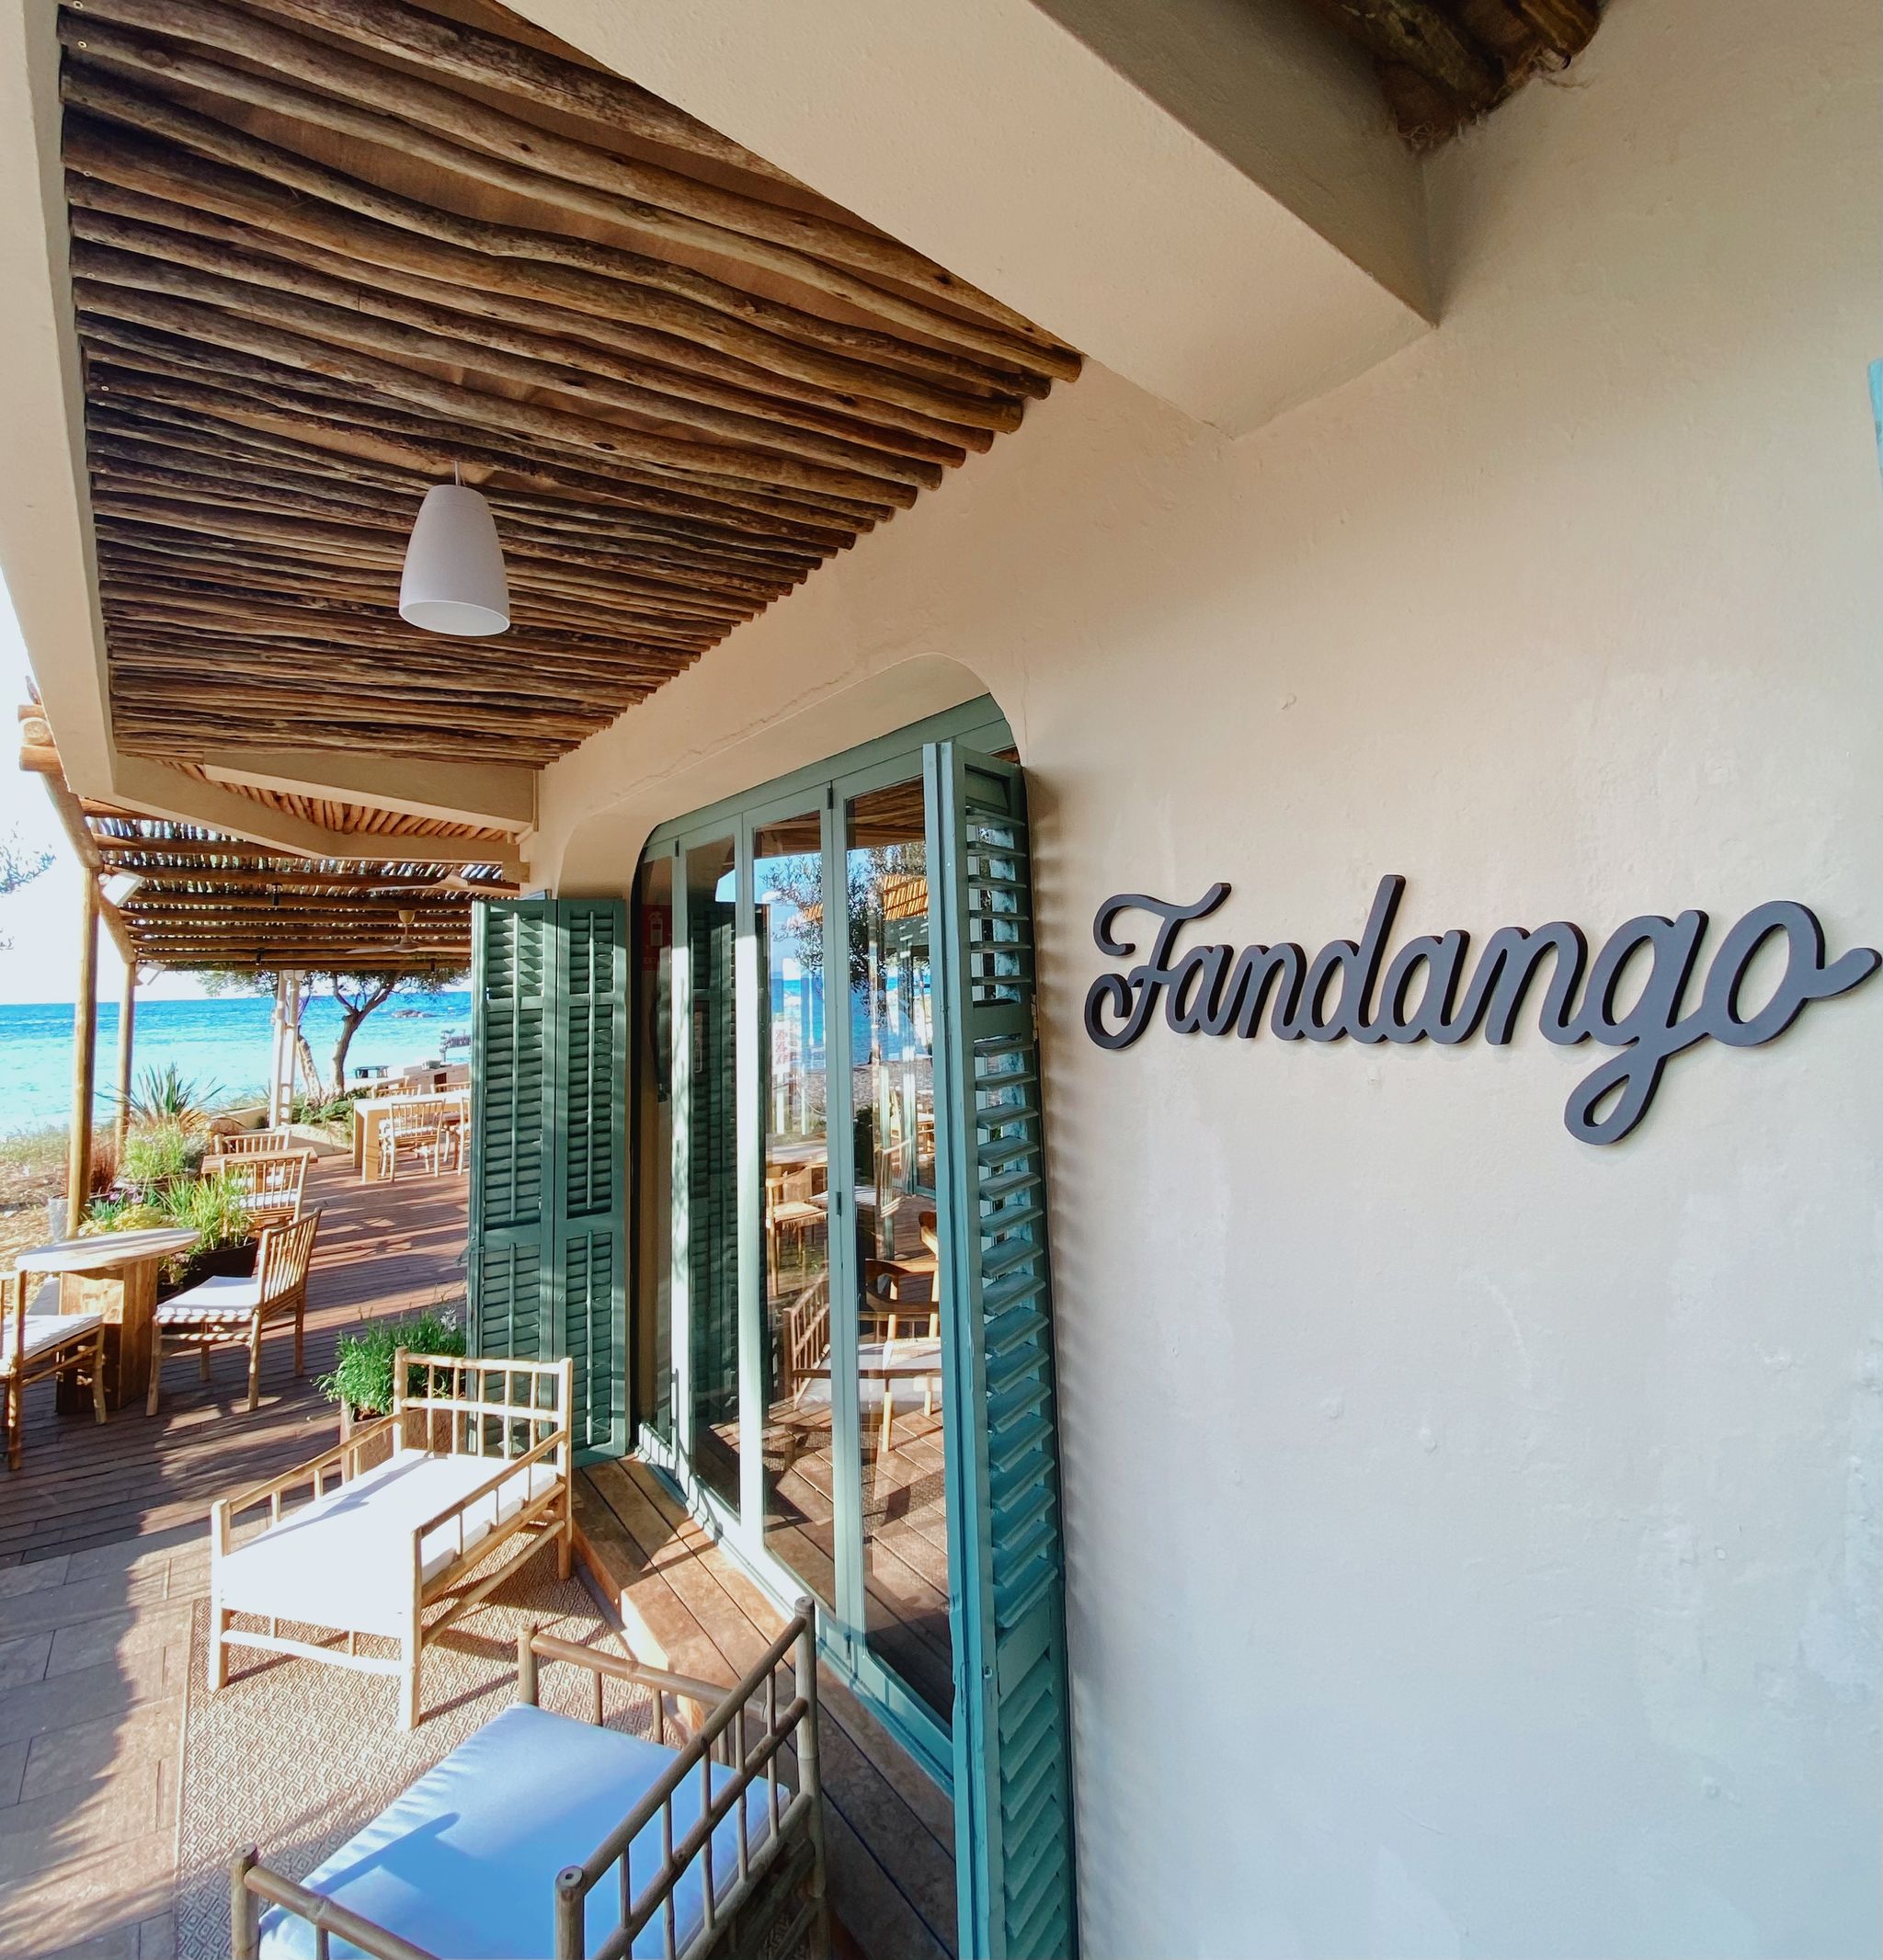 fandango formentera, el nuevo 'place to be' de la isla